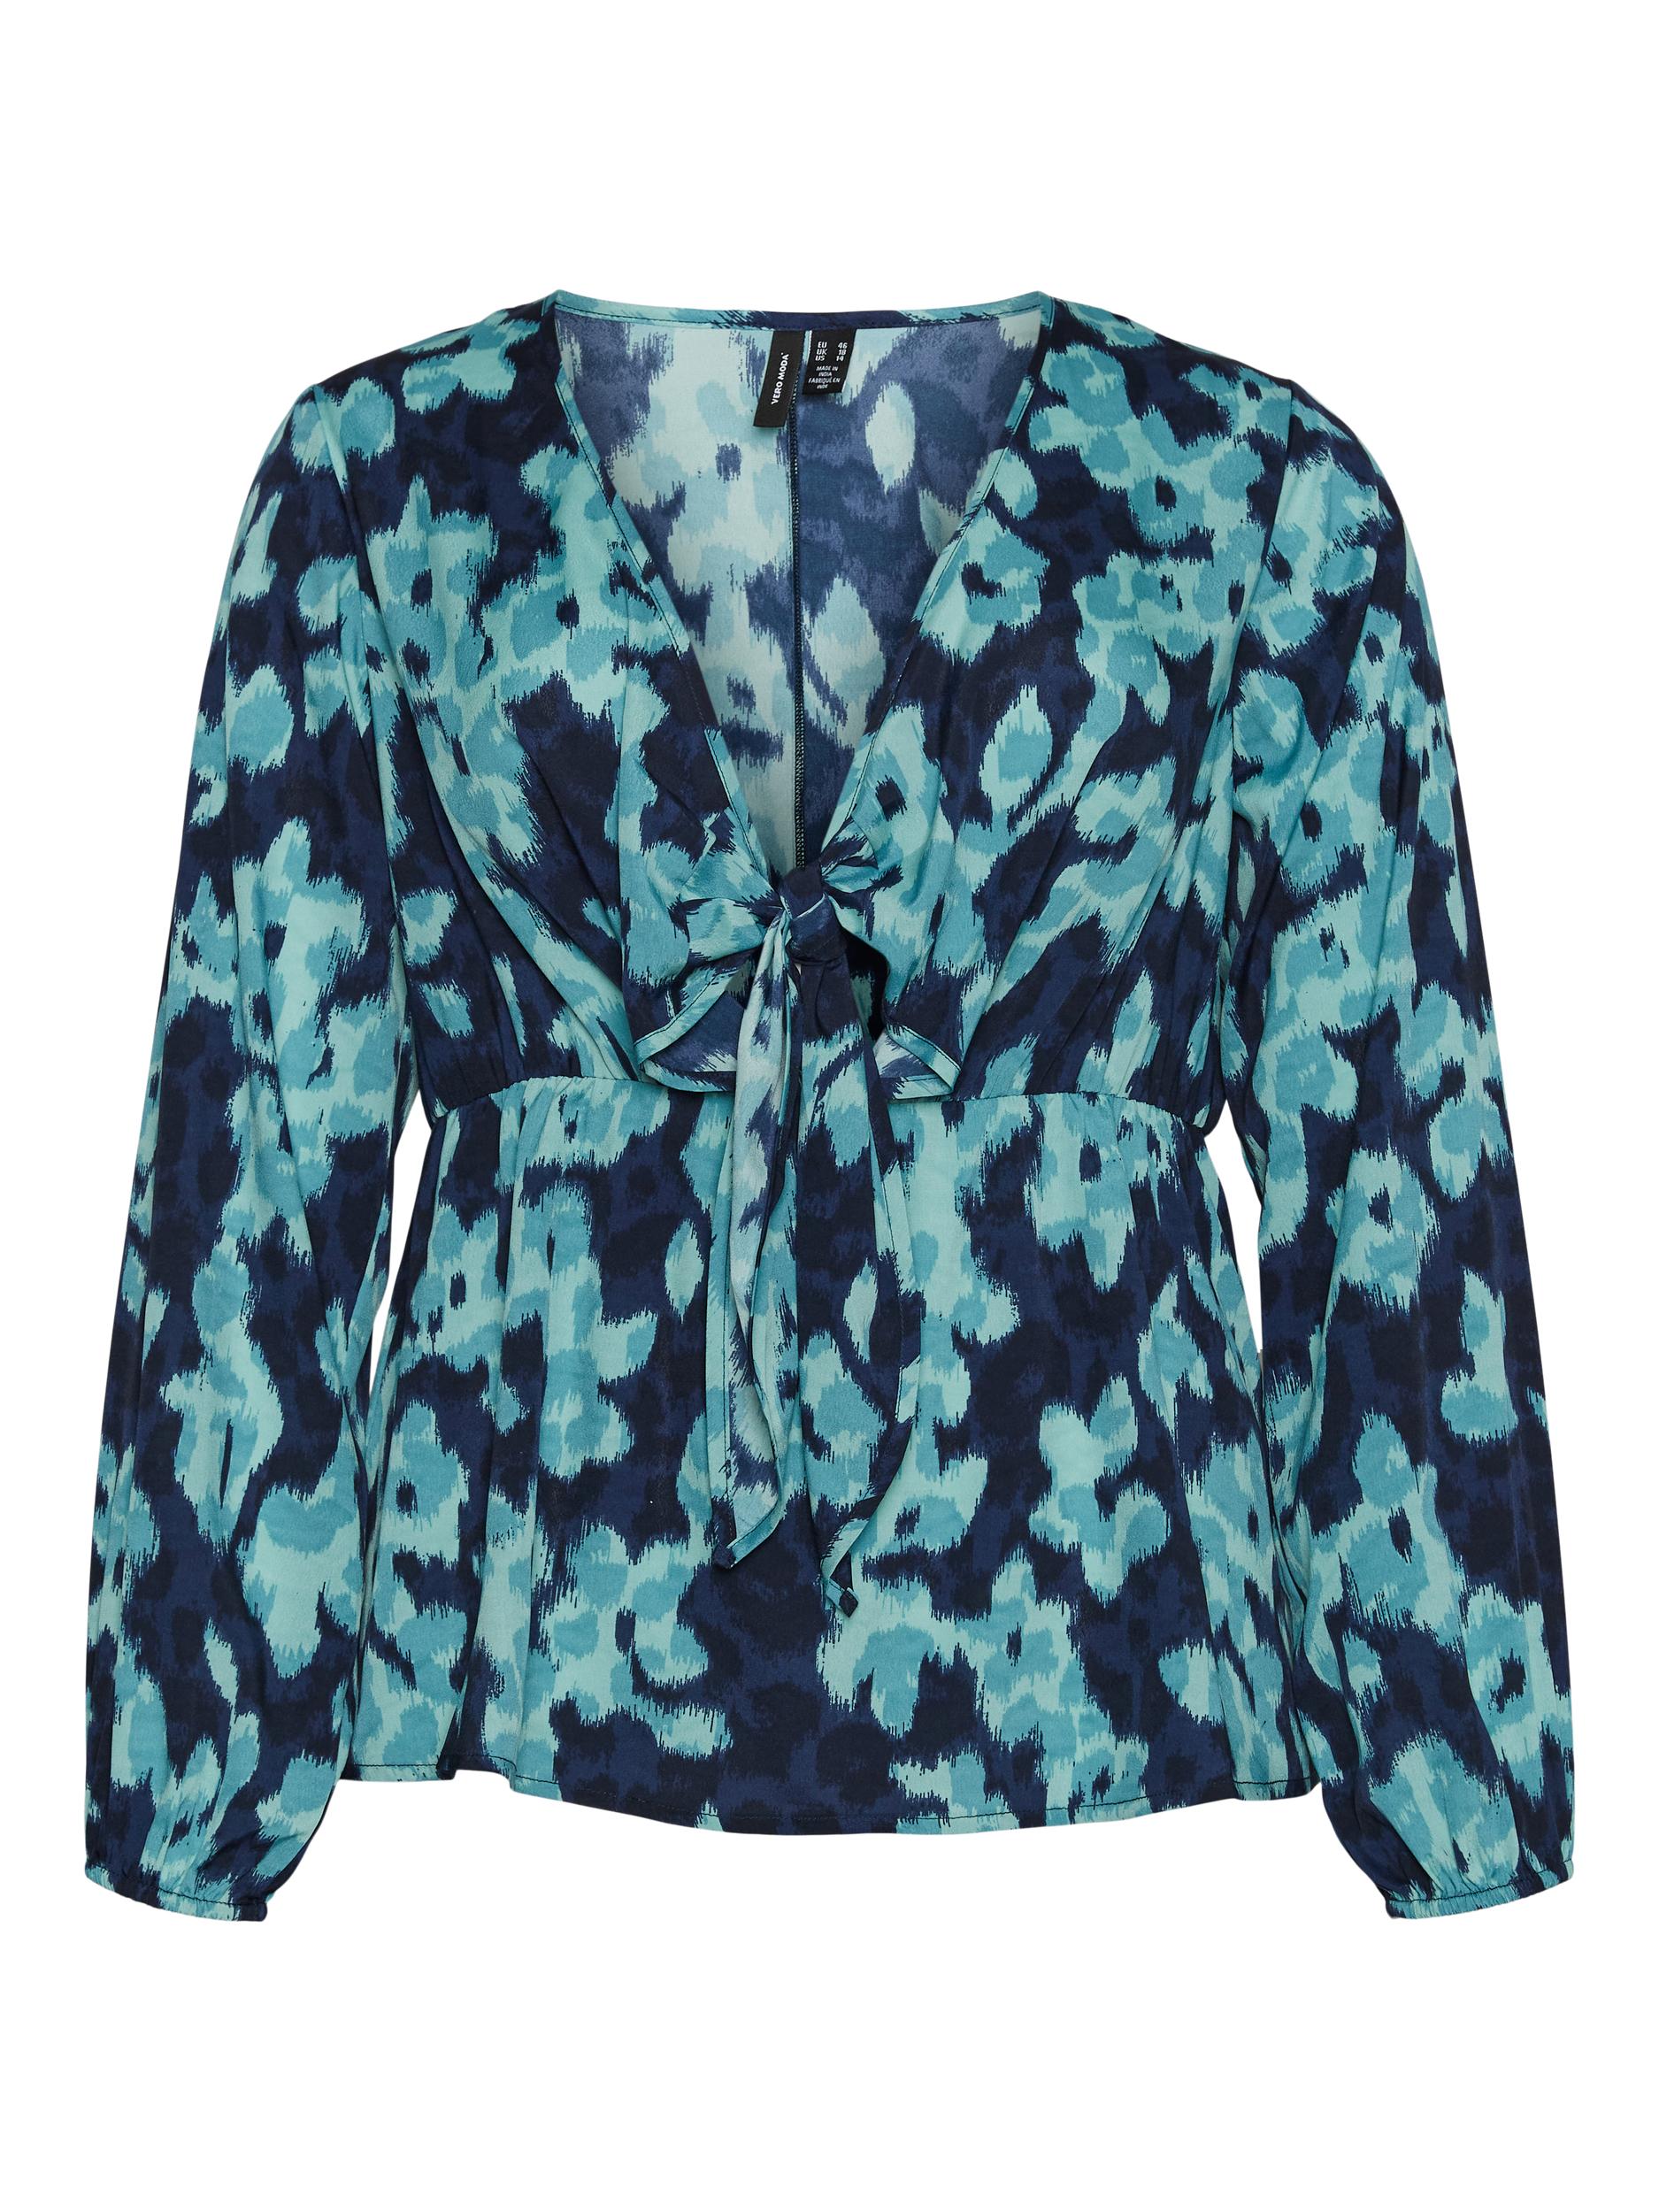 Odzież eBaZy Vero Moda Curve Bluzka Athena w kolorze Granatowym 